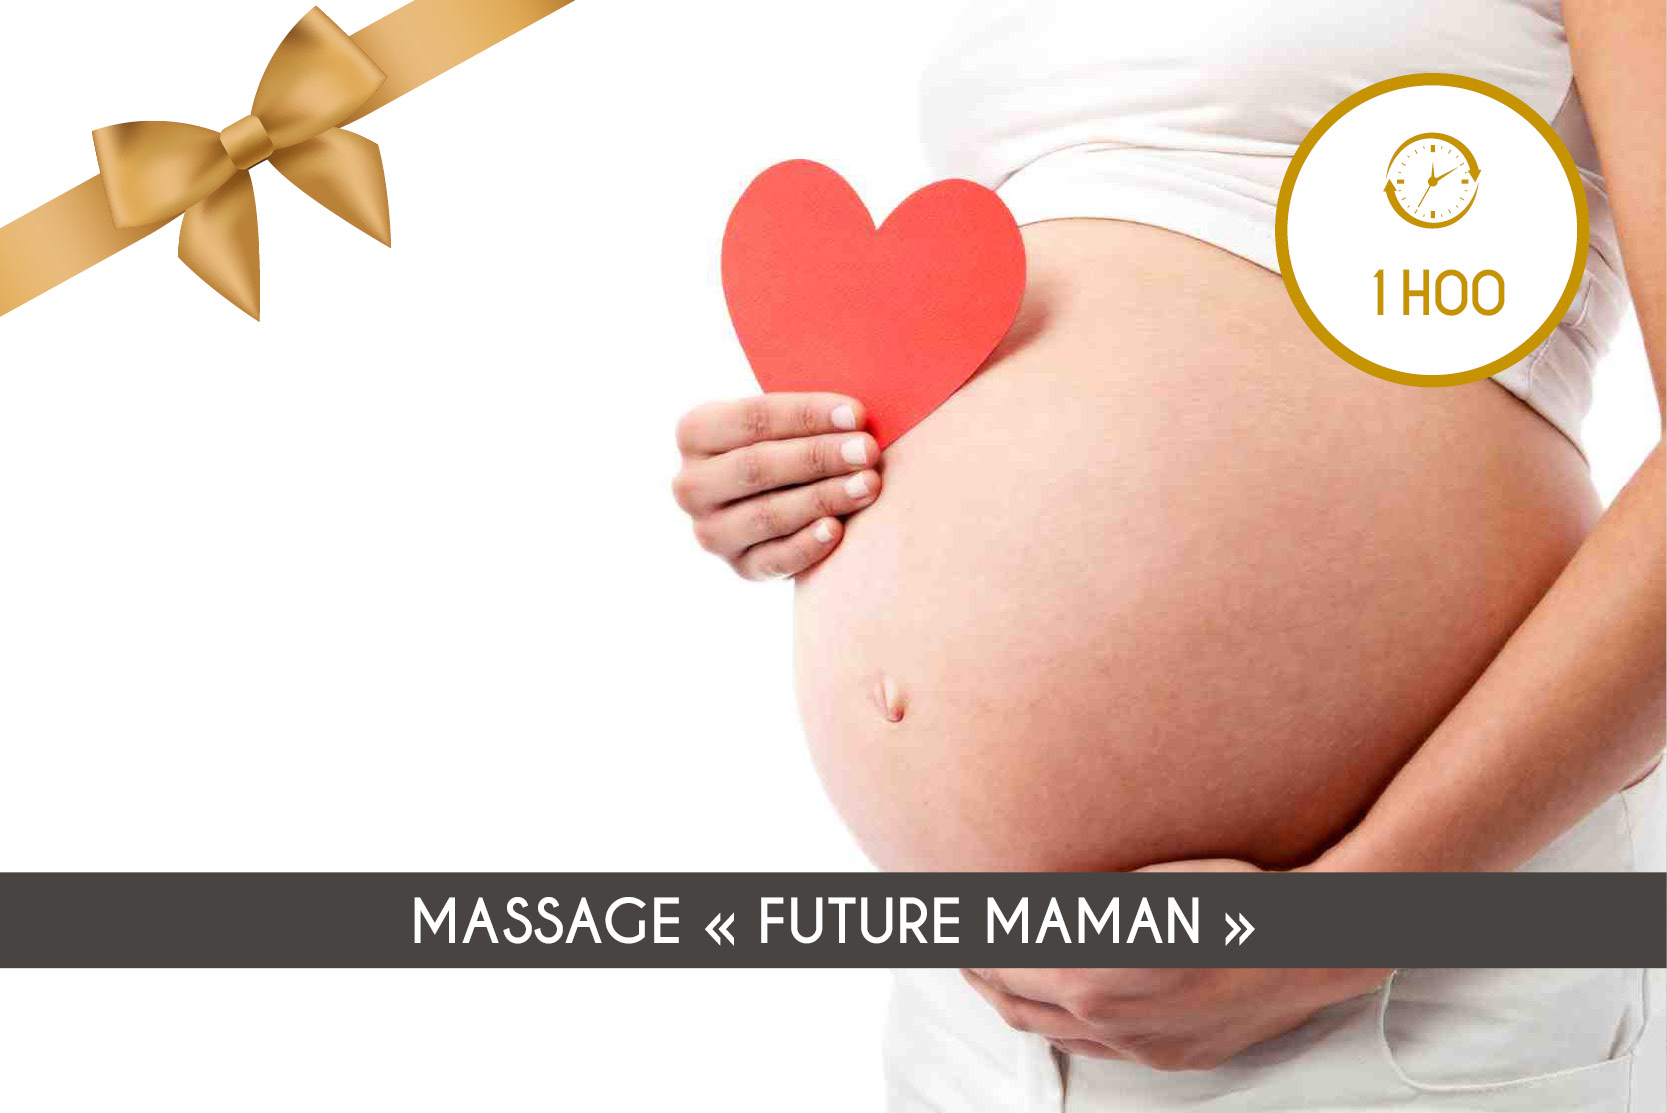 Massage "Future Maman" (1h00)